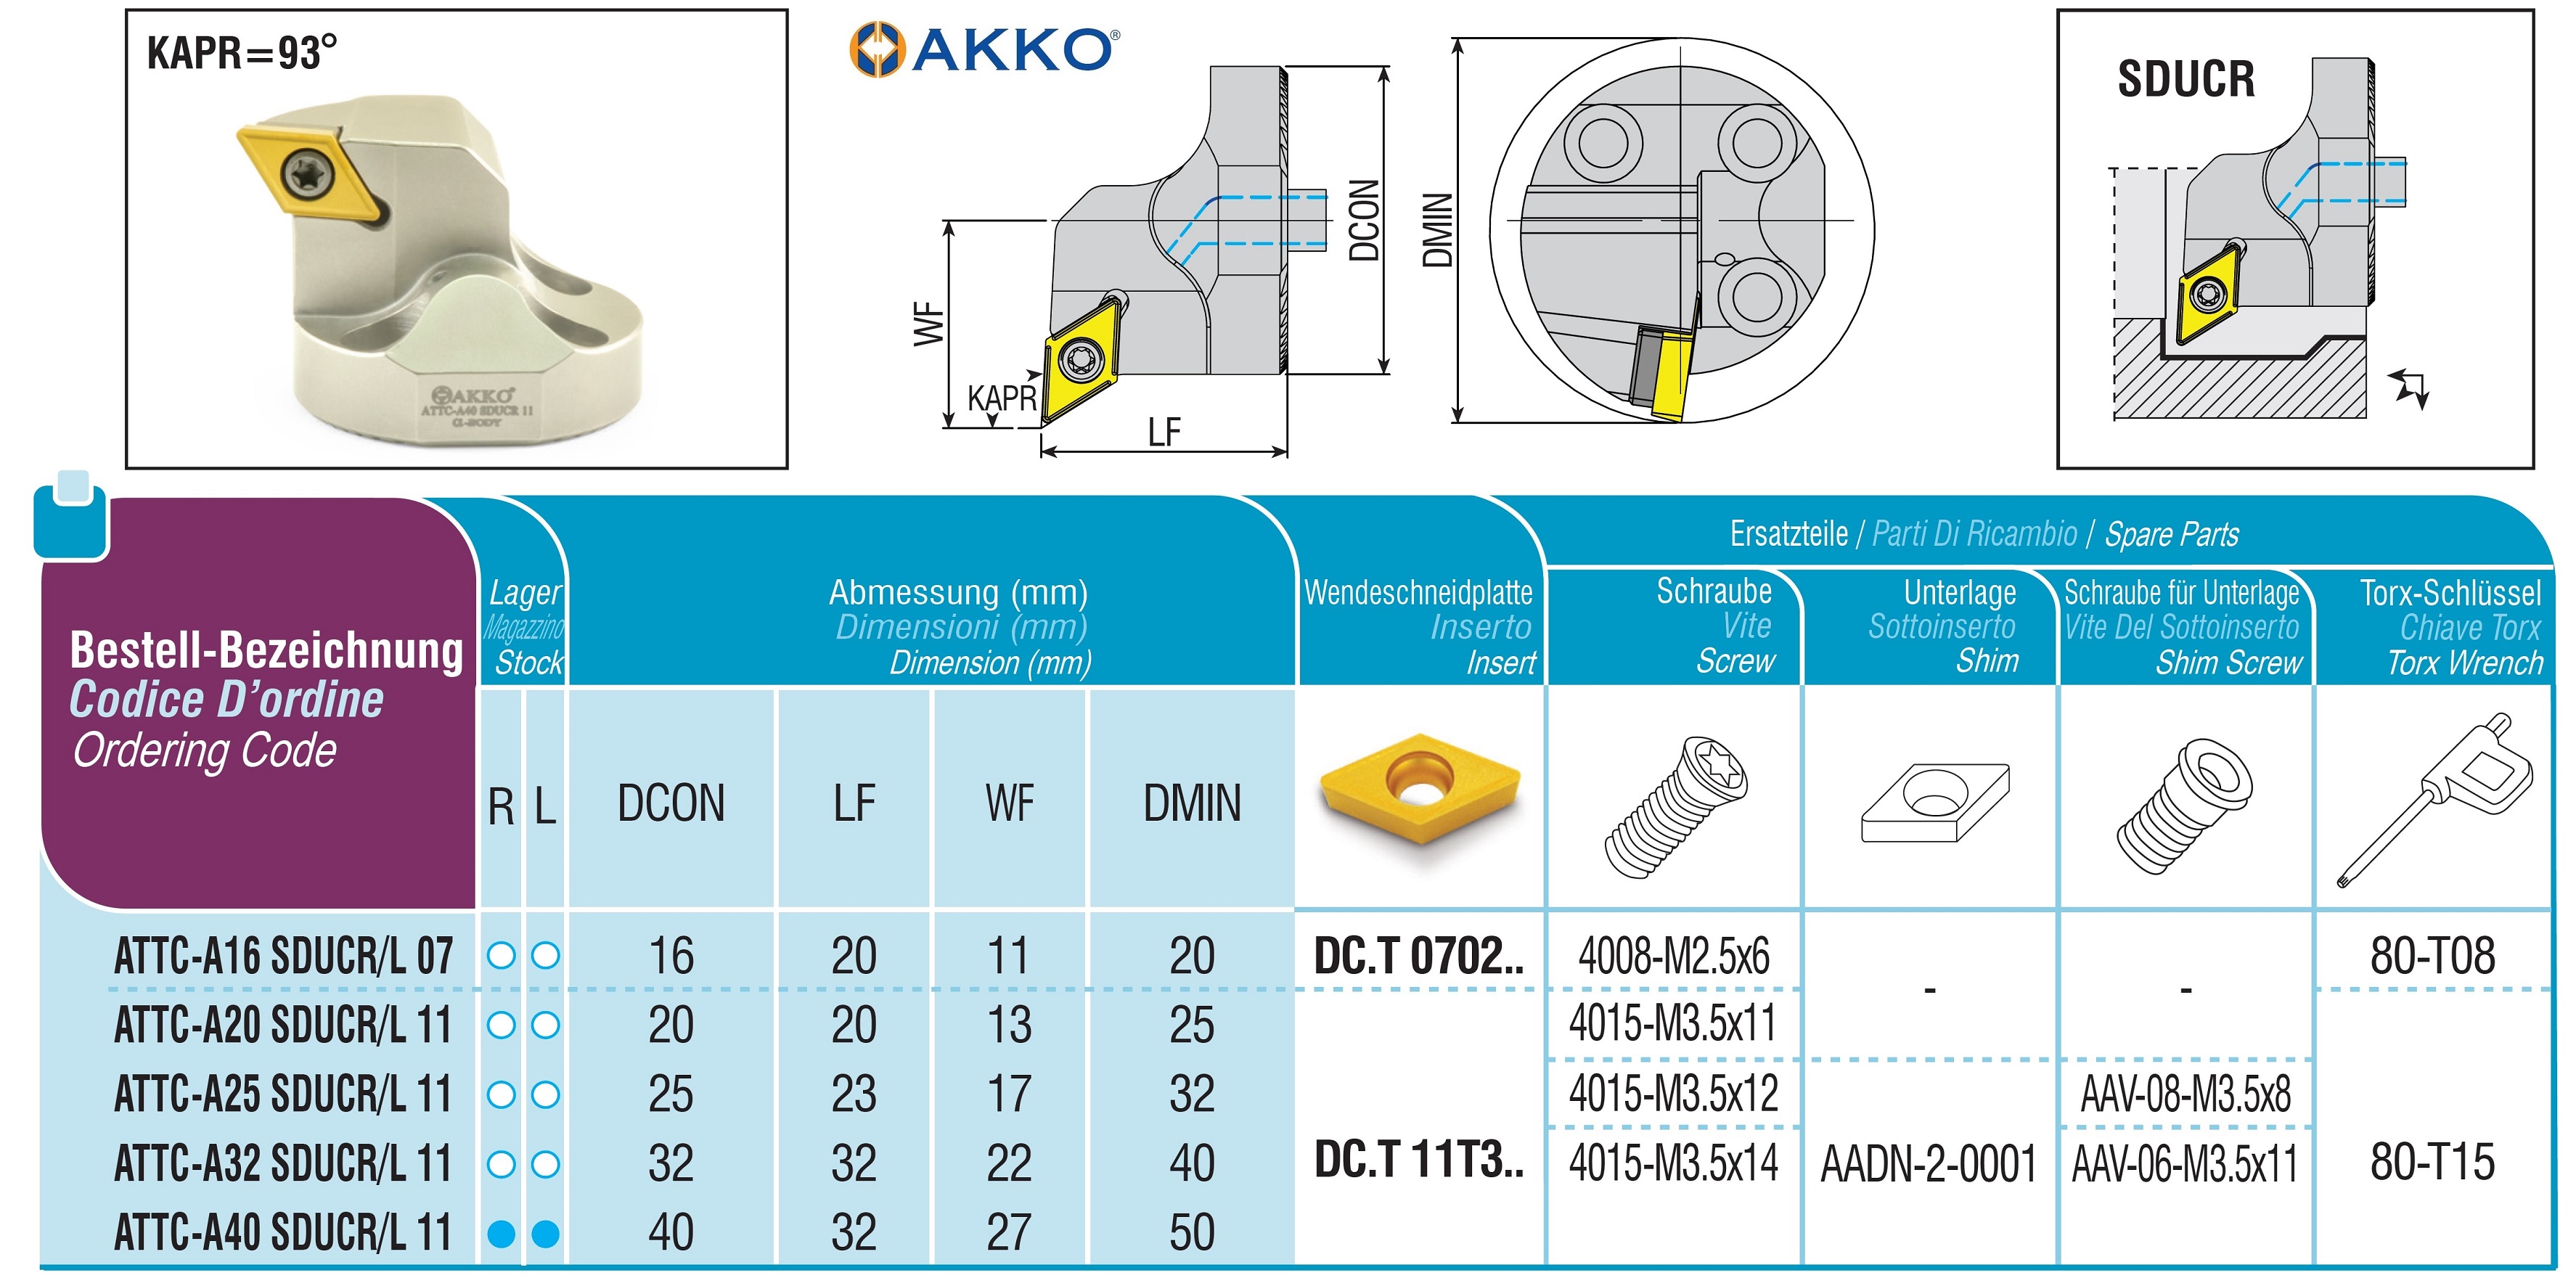 AKKO-Wechselkopf für schwingungsgedämpfte Bohrstange, ø = 32 mm, für Wendeplatte DC.T 11T3.., mit Innenkühlung, für eine hohe Oberflächenqualität bei großer Auskraglänge, linke Ausführung
